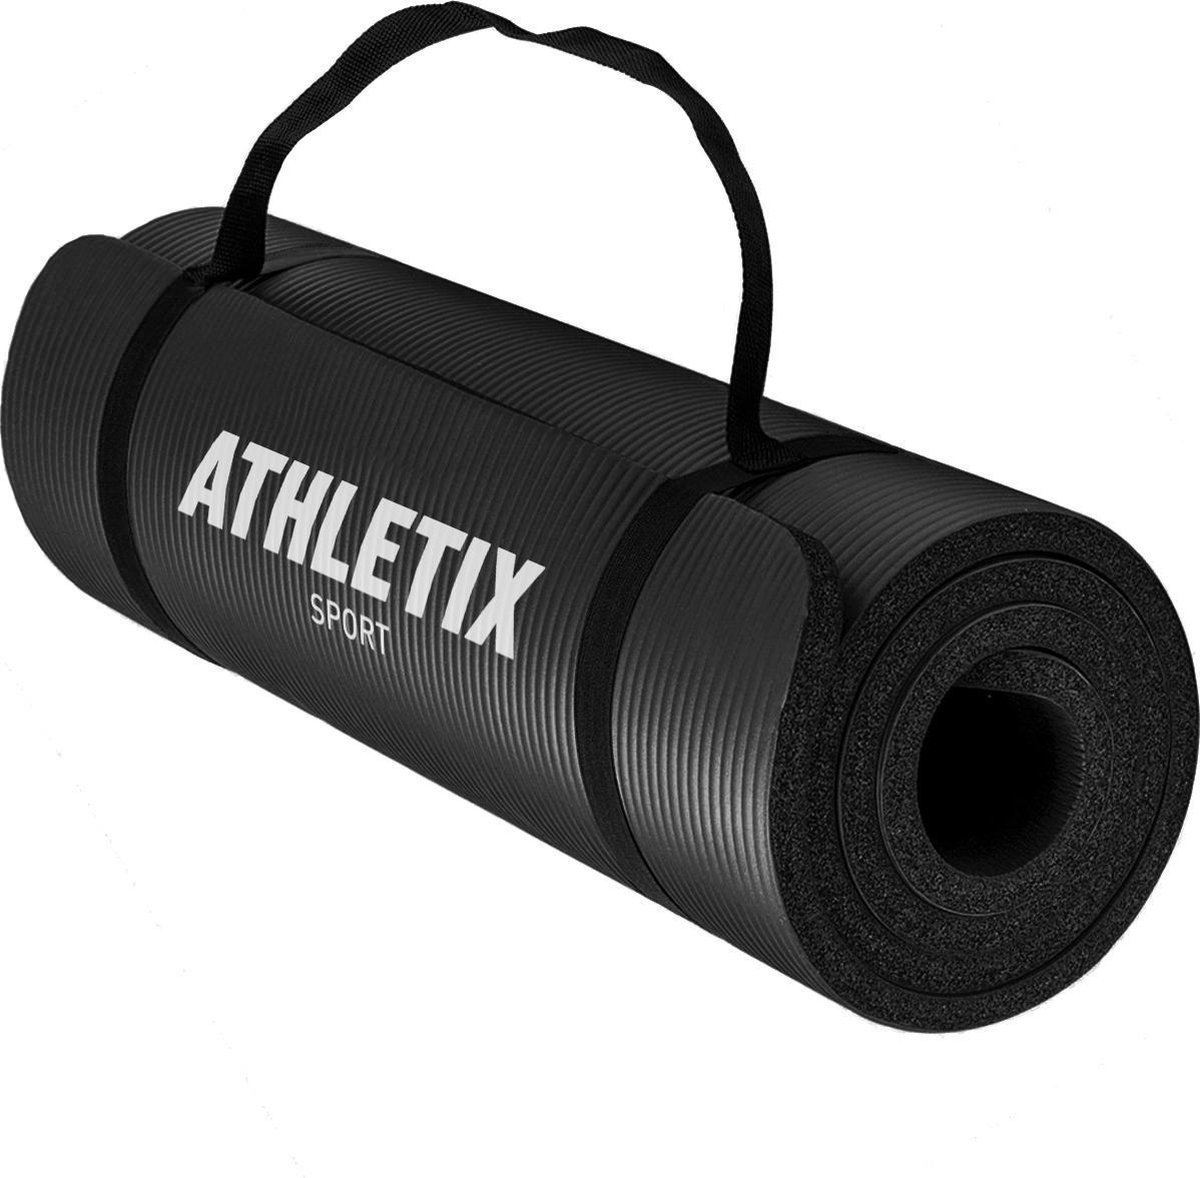 Athletix®‎ Premium NBR Fitnessmat - Yogamat - 183 x 61 x 1.5 cm - met Draagriem en Draagtas - Zwart - Athletix®